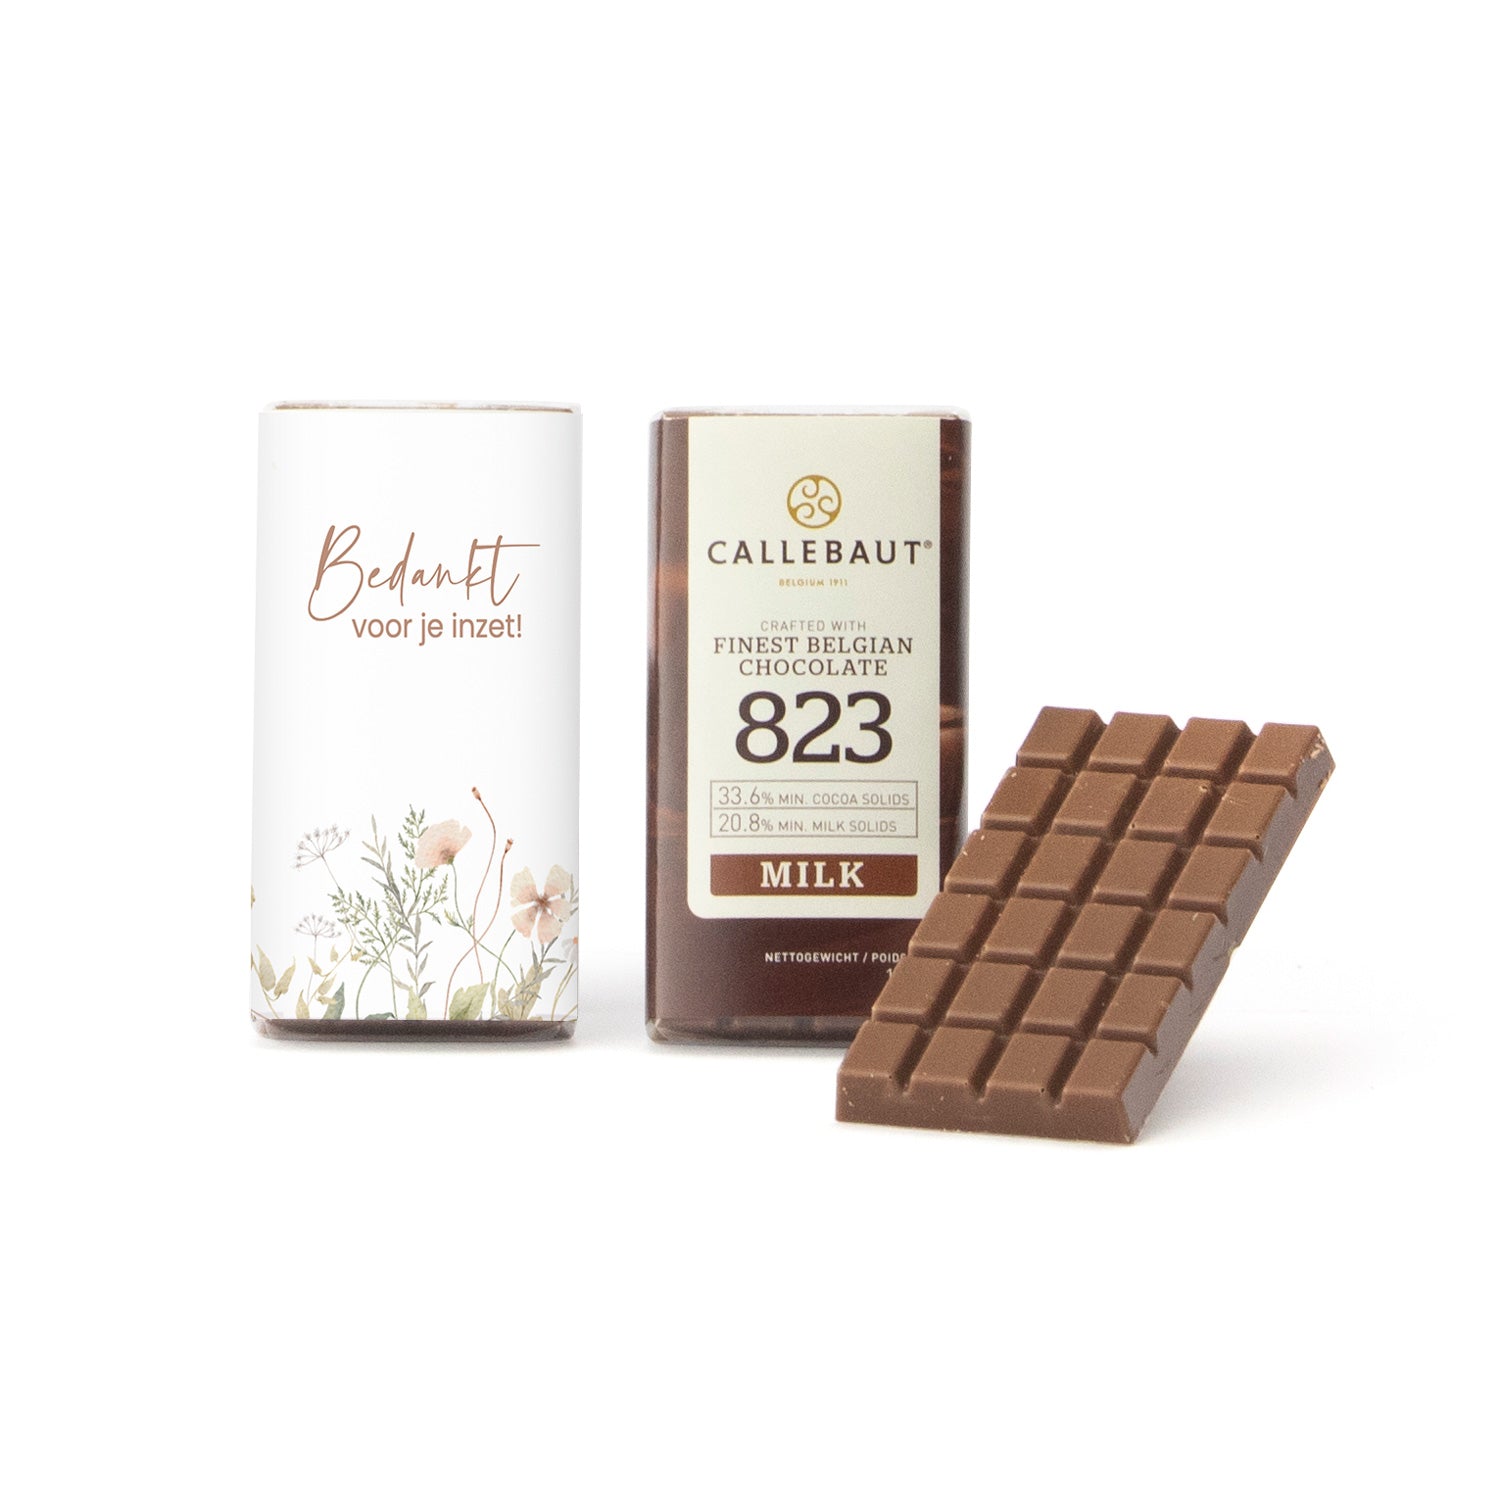 Callebaut chocolaatjes (25 stuks) - Verpleging - Bedankjes.nl